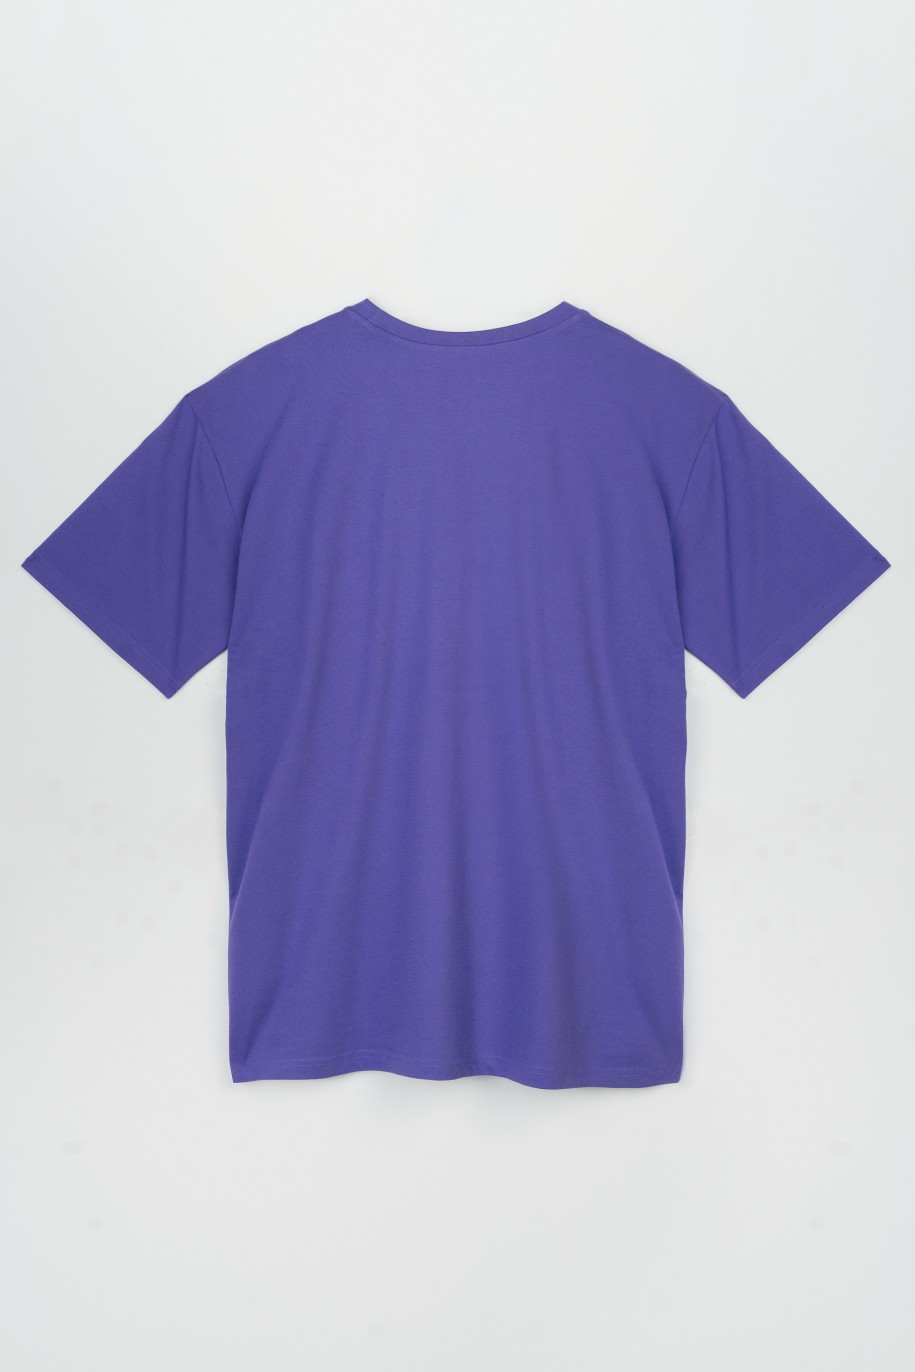 Fioletowy t-shirt oversize z czarną grafiką z przodu - 47421